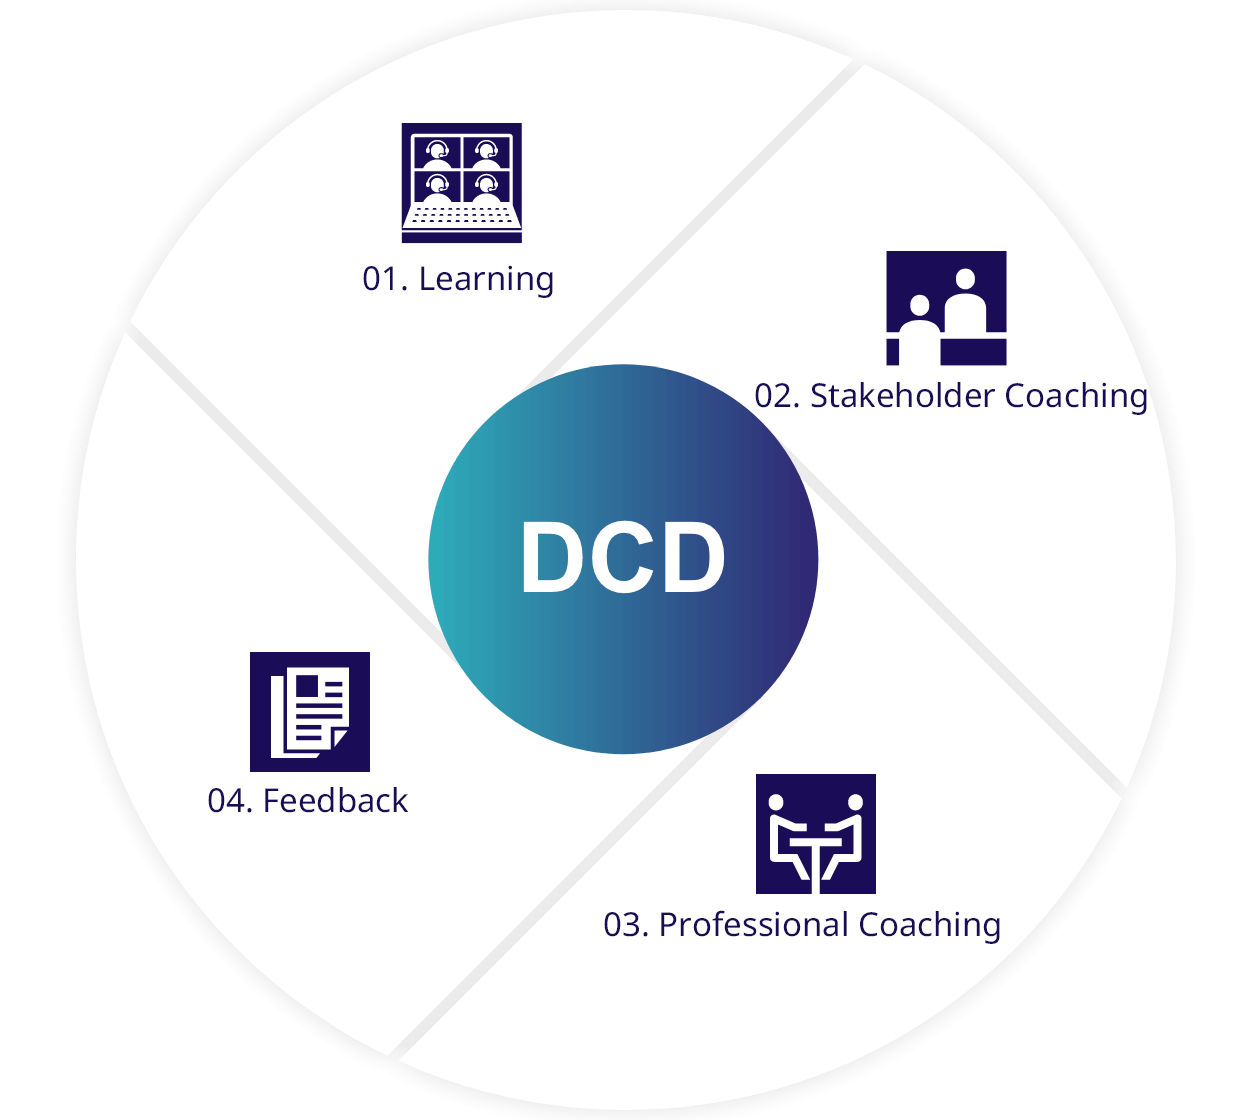 The DCD process